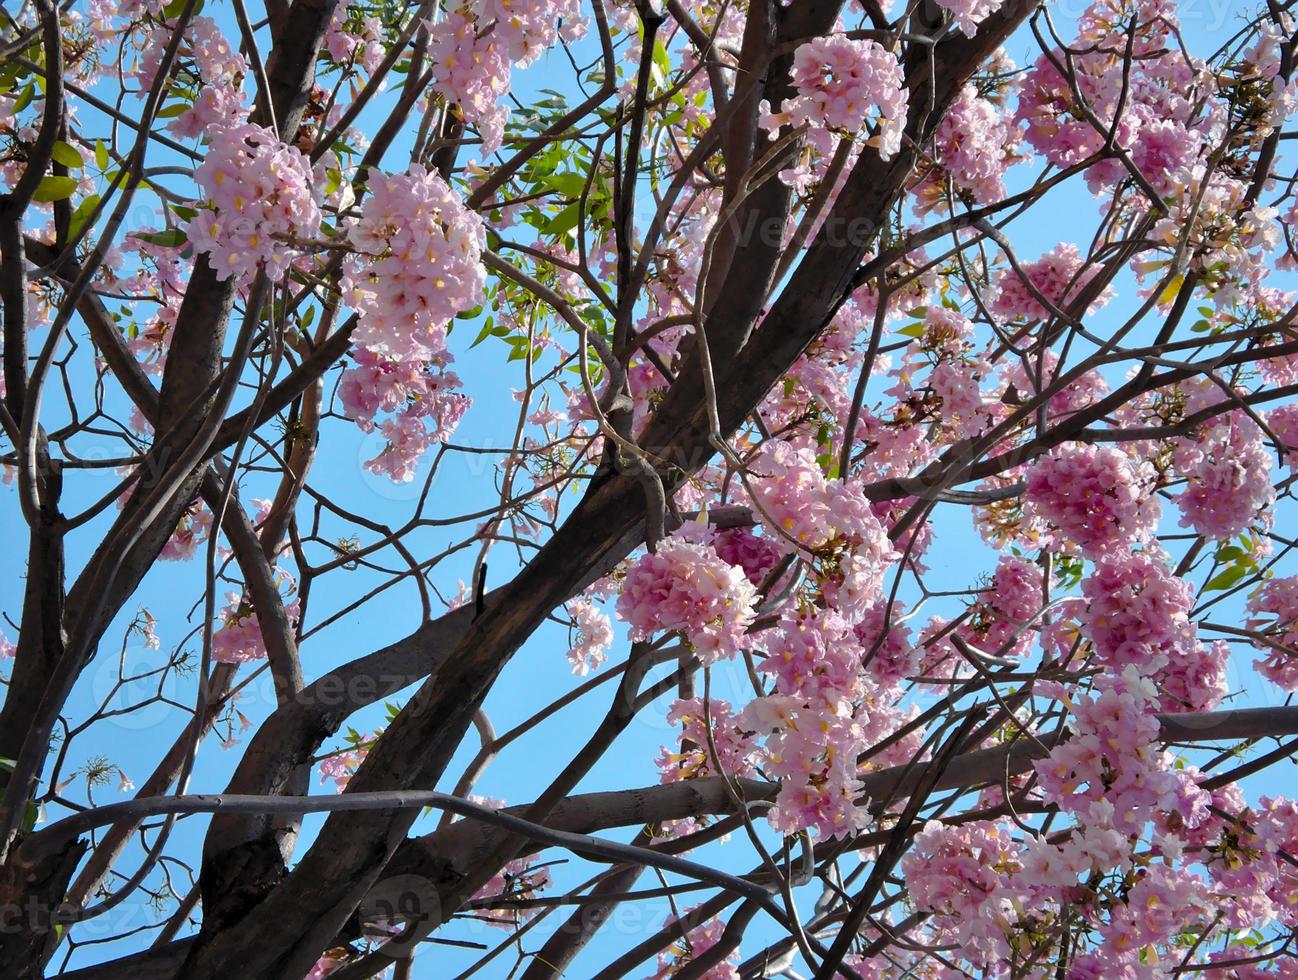 de bloem is een roze bloeiende struik aan de boom in de zomer op de achtergrond van een frisse blauwe lucht. foto